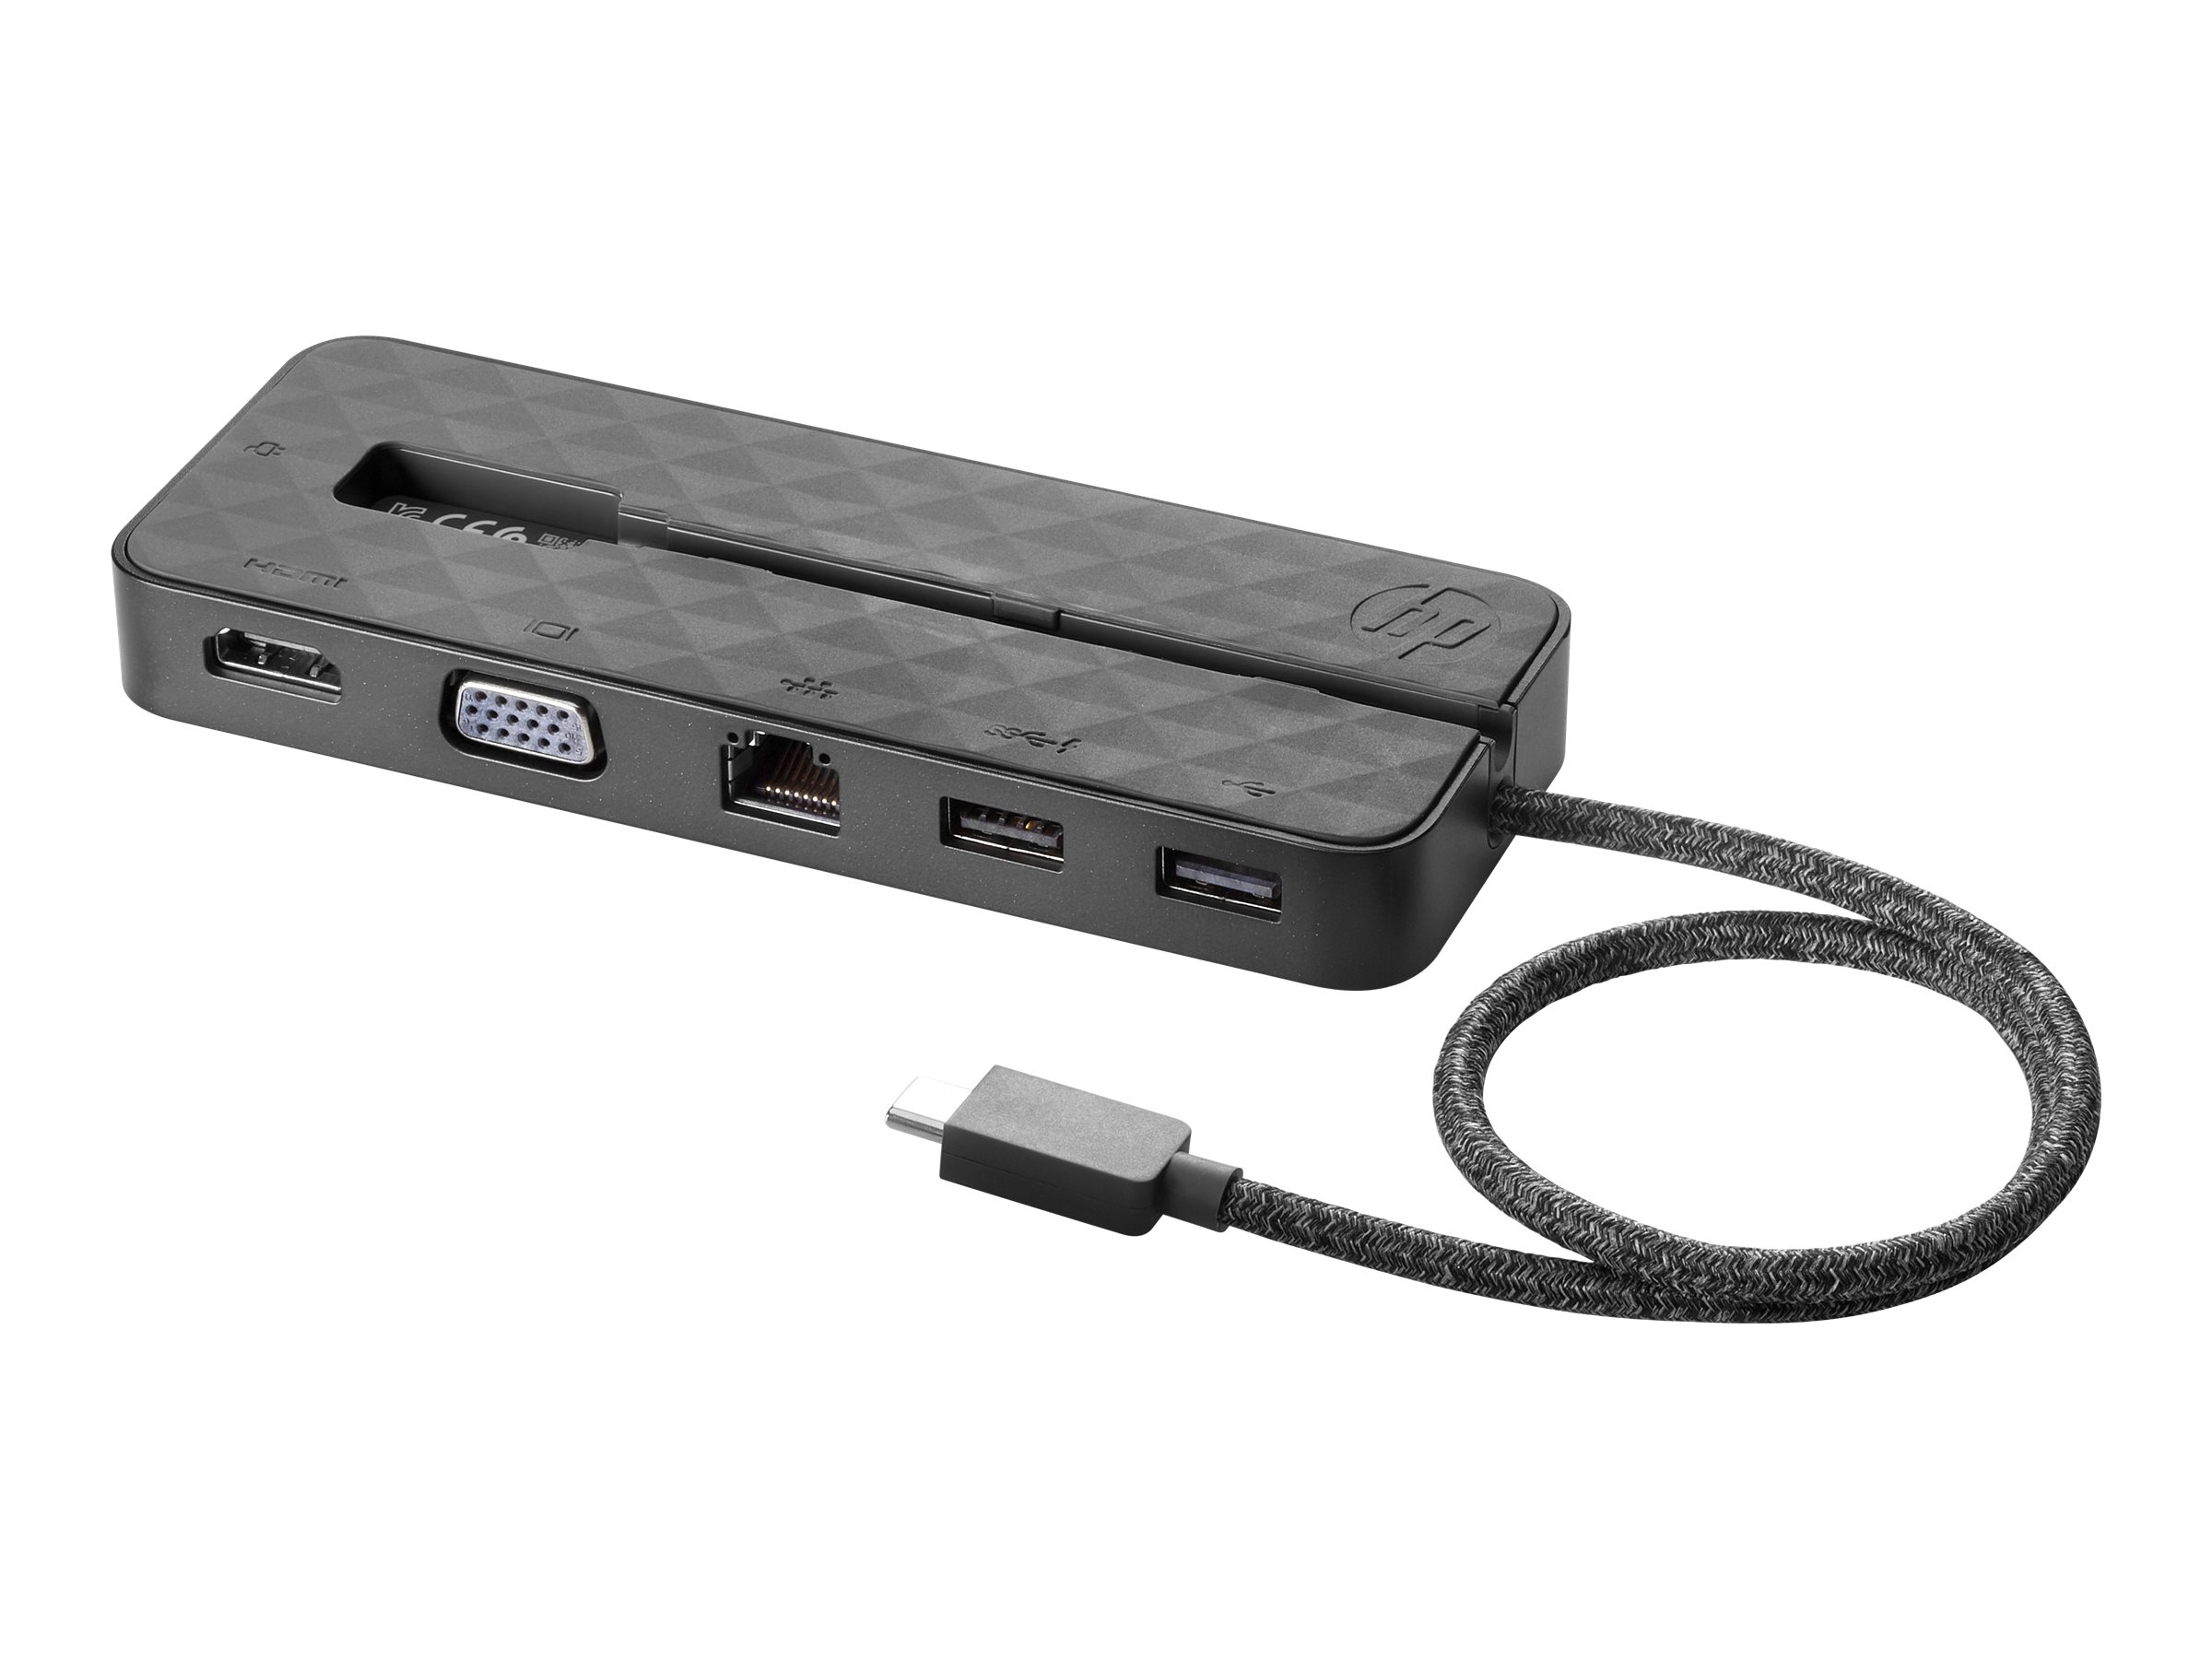 HP USB-C mini Dock - Dockingstation - USB-C - VGA, HDMI